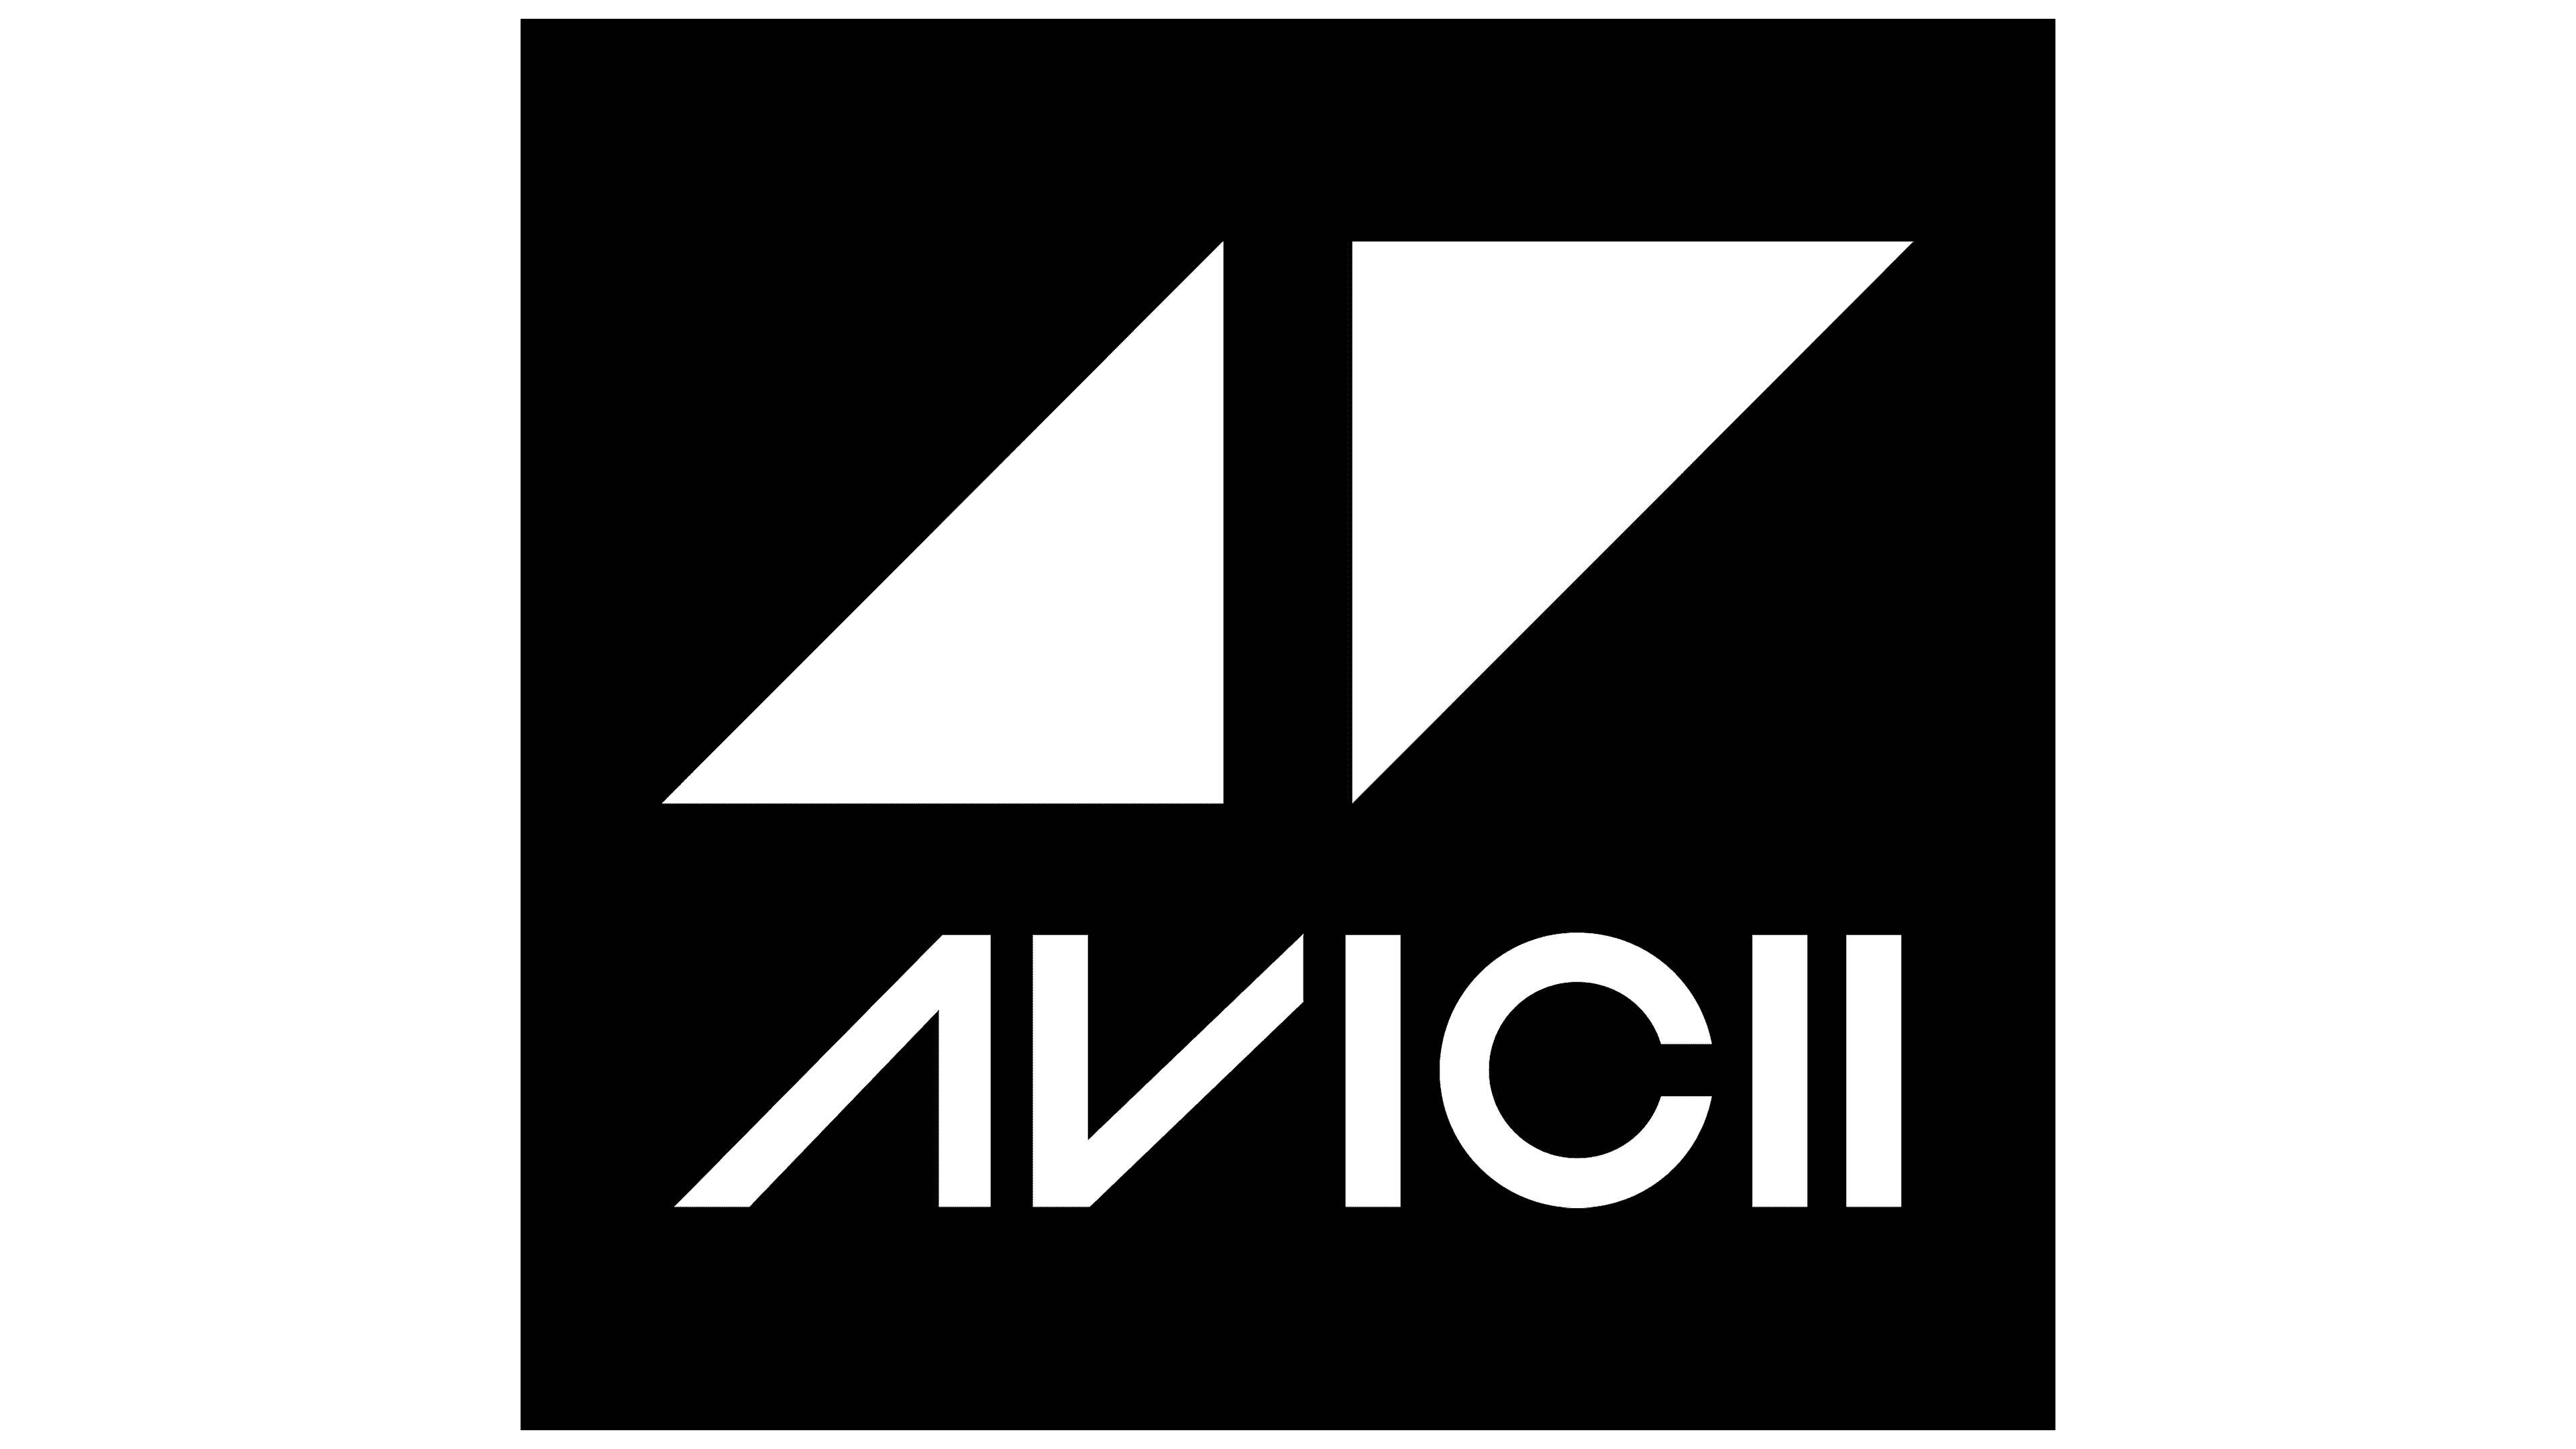 Avicii Logo y símbolo, significado, historia, PNG, marca